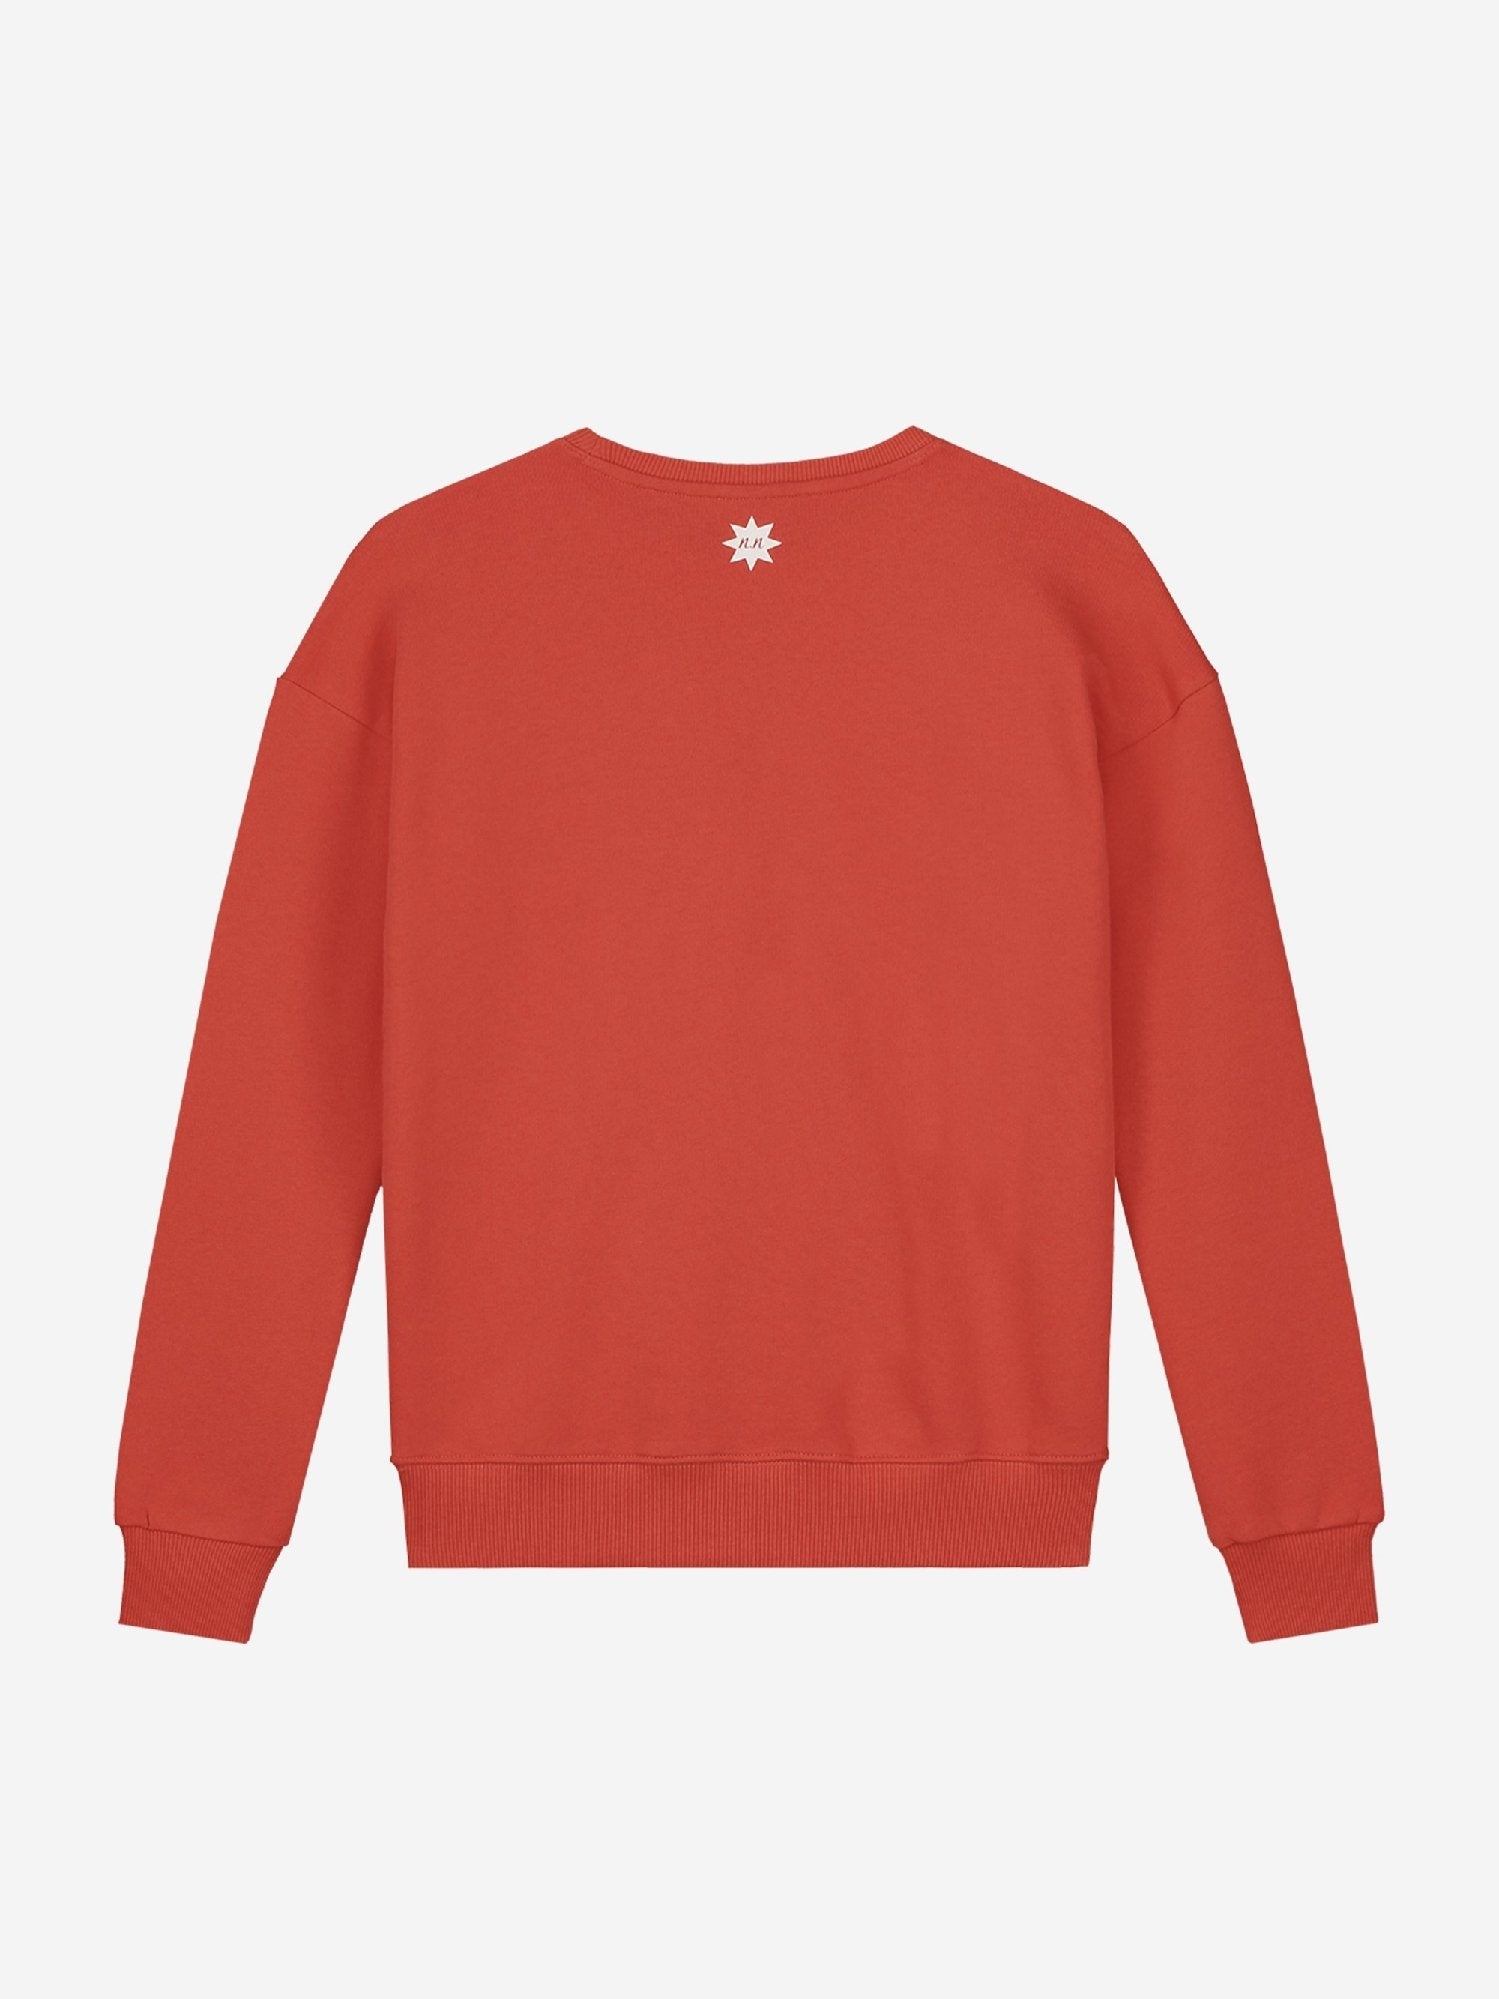 Meisjes Flow Sweater van Nik & Nik in de kleur Rood in maat 176.